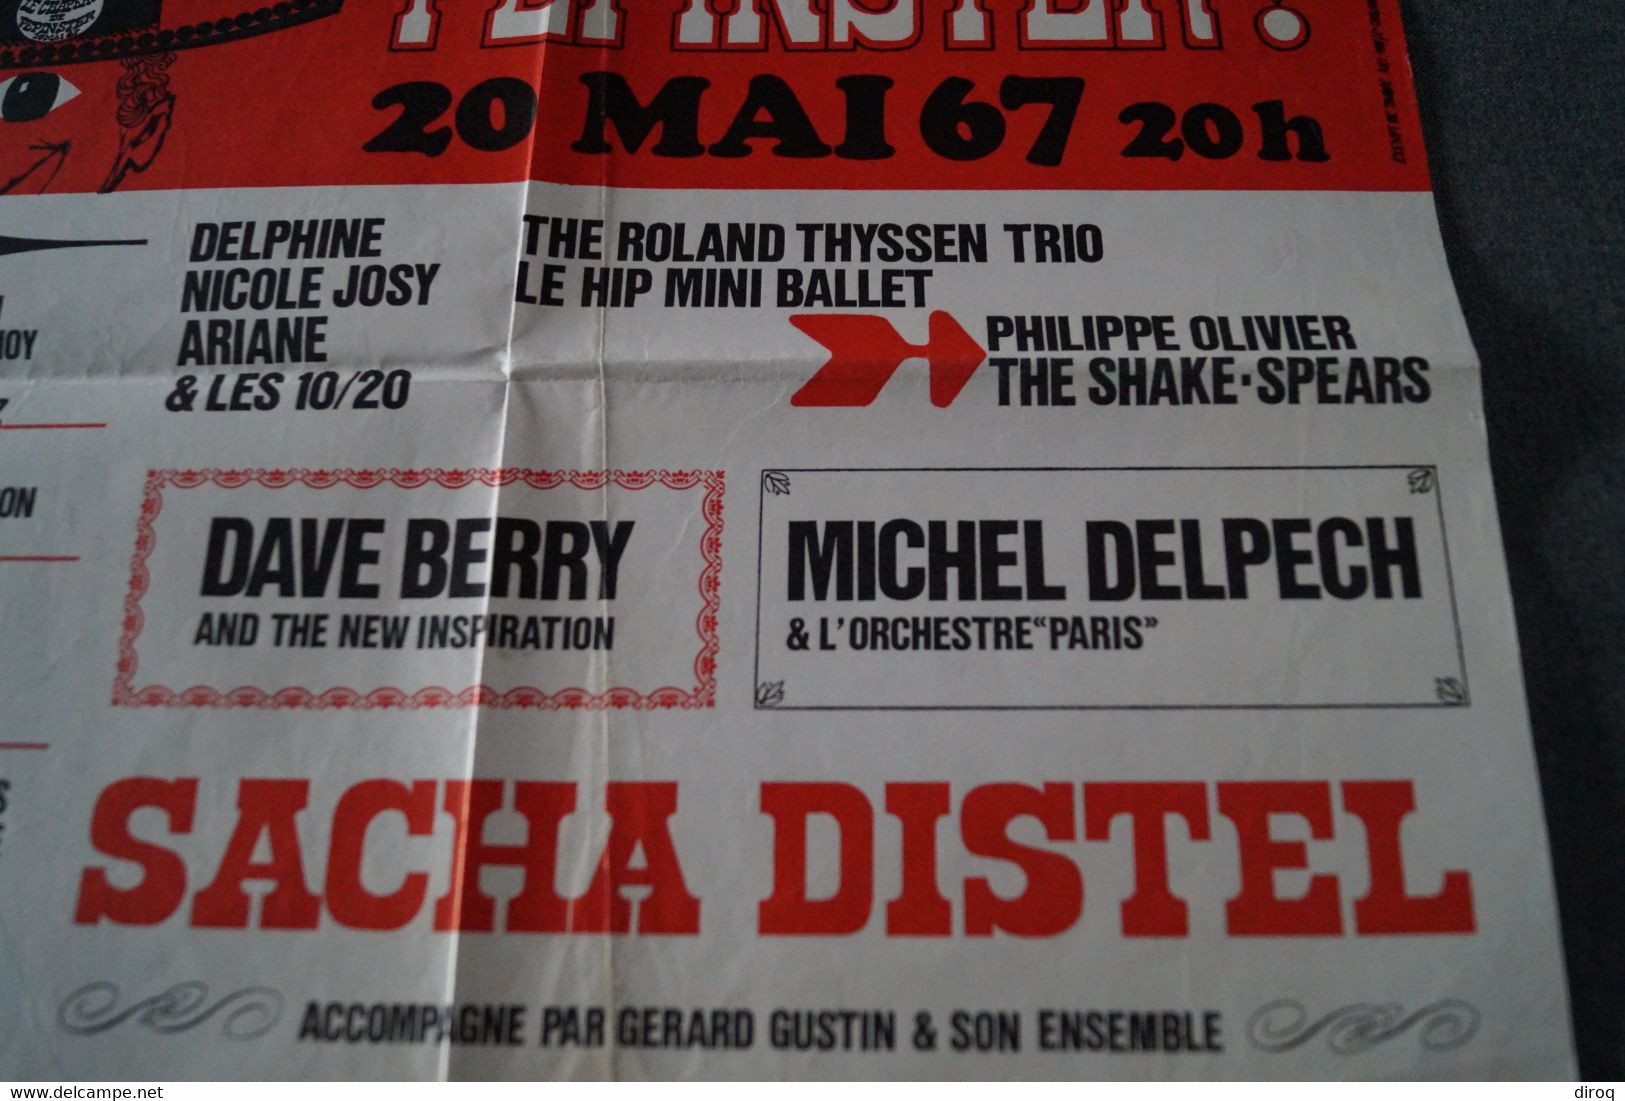 Affiche Originale De 1967,Michel Delpech,Sacha Distel,Dave Berry,Le Chapeau De Pépinster,36 Cm. Sur 34 Cm.original - Plakate